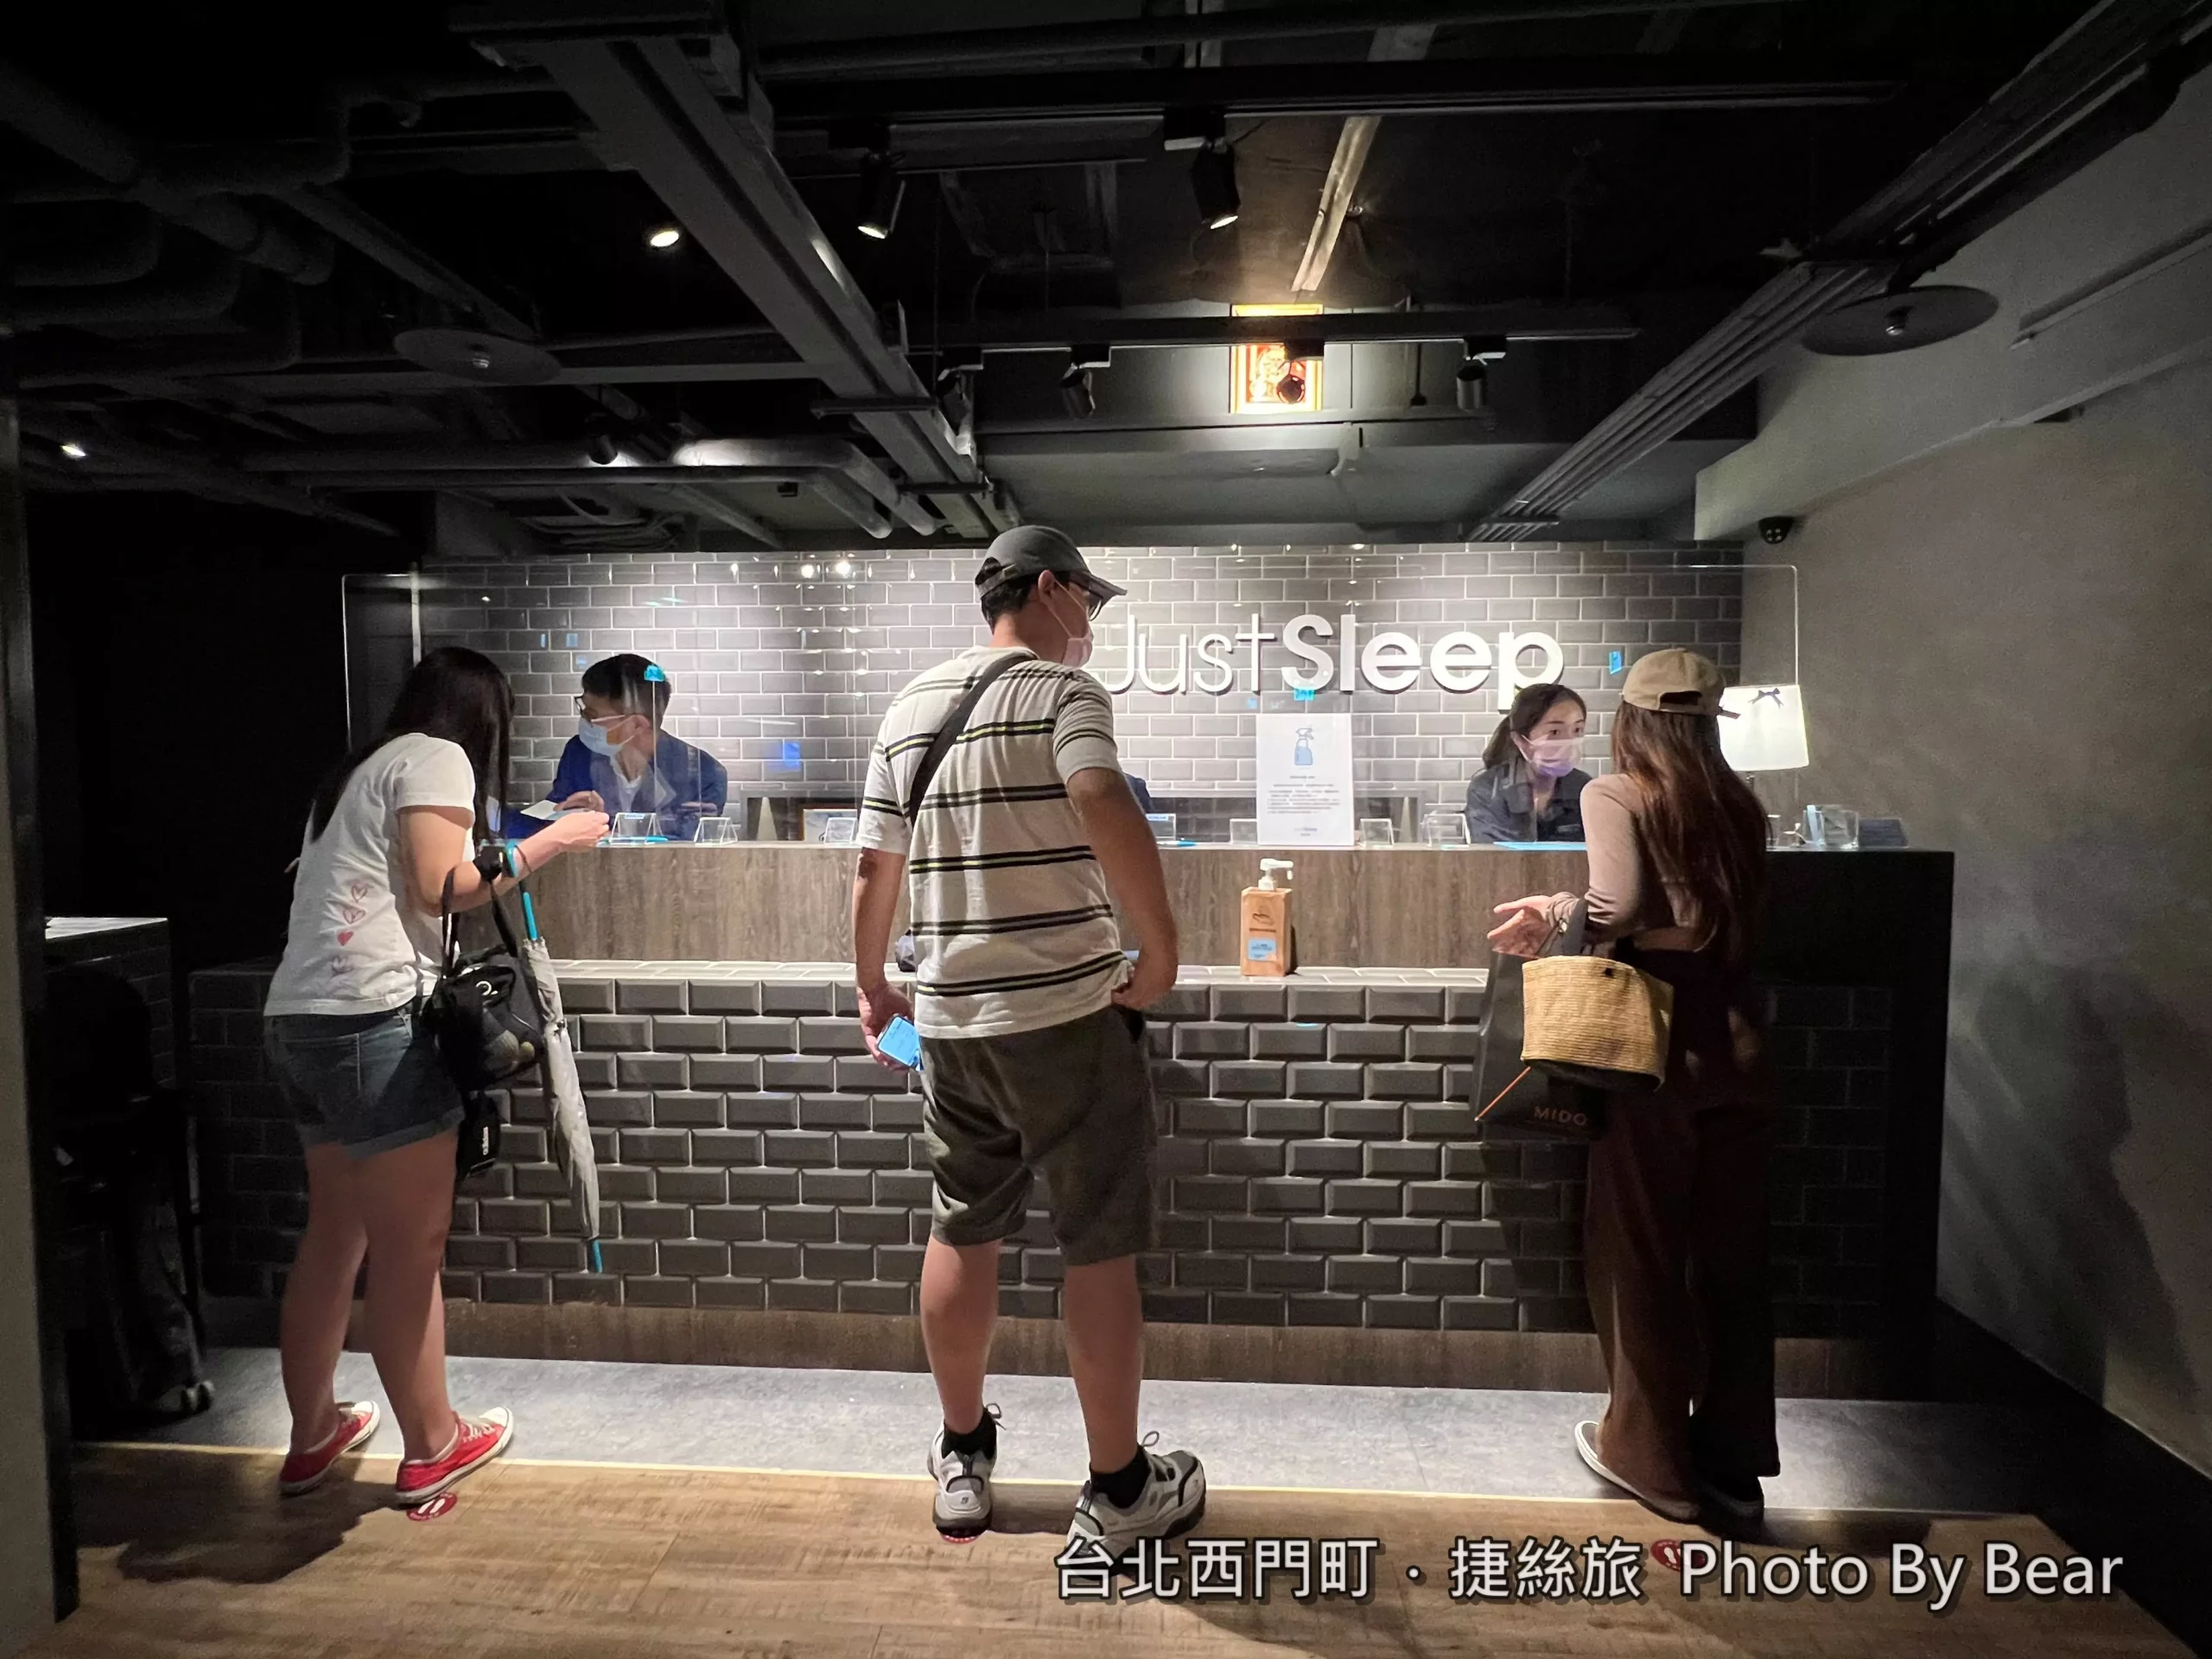 「捷絲旅台北西門館Just Sleep Taipei Ximending | 鄰近西門町商圈及捷運站的質感風格旅店，樓下就有7-11和壽司郎」